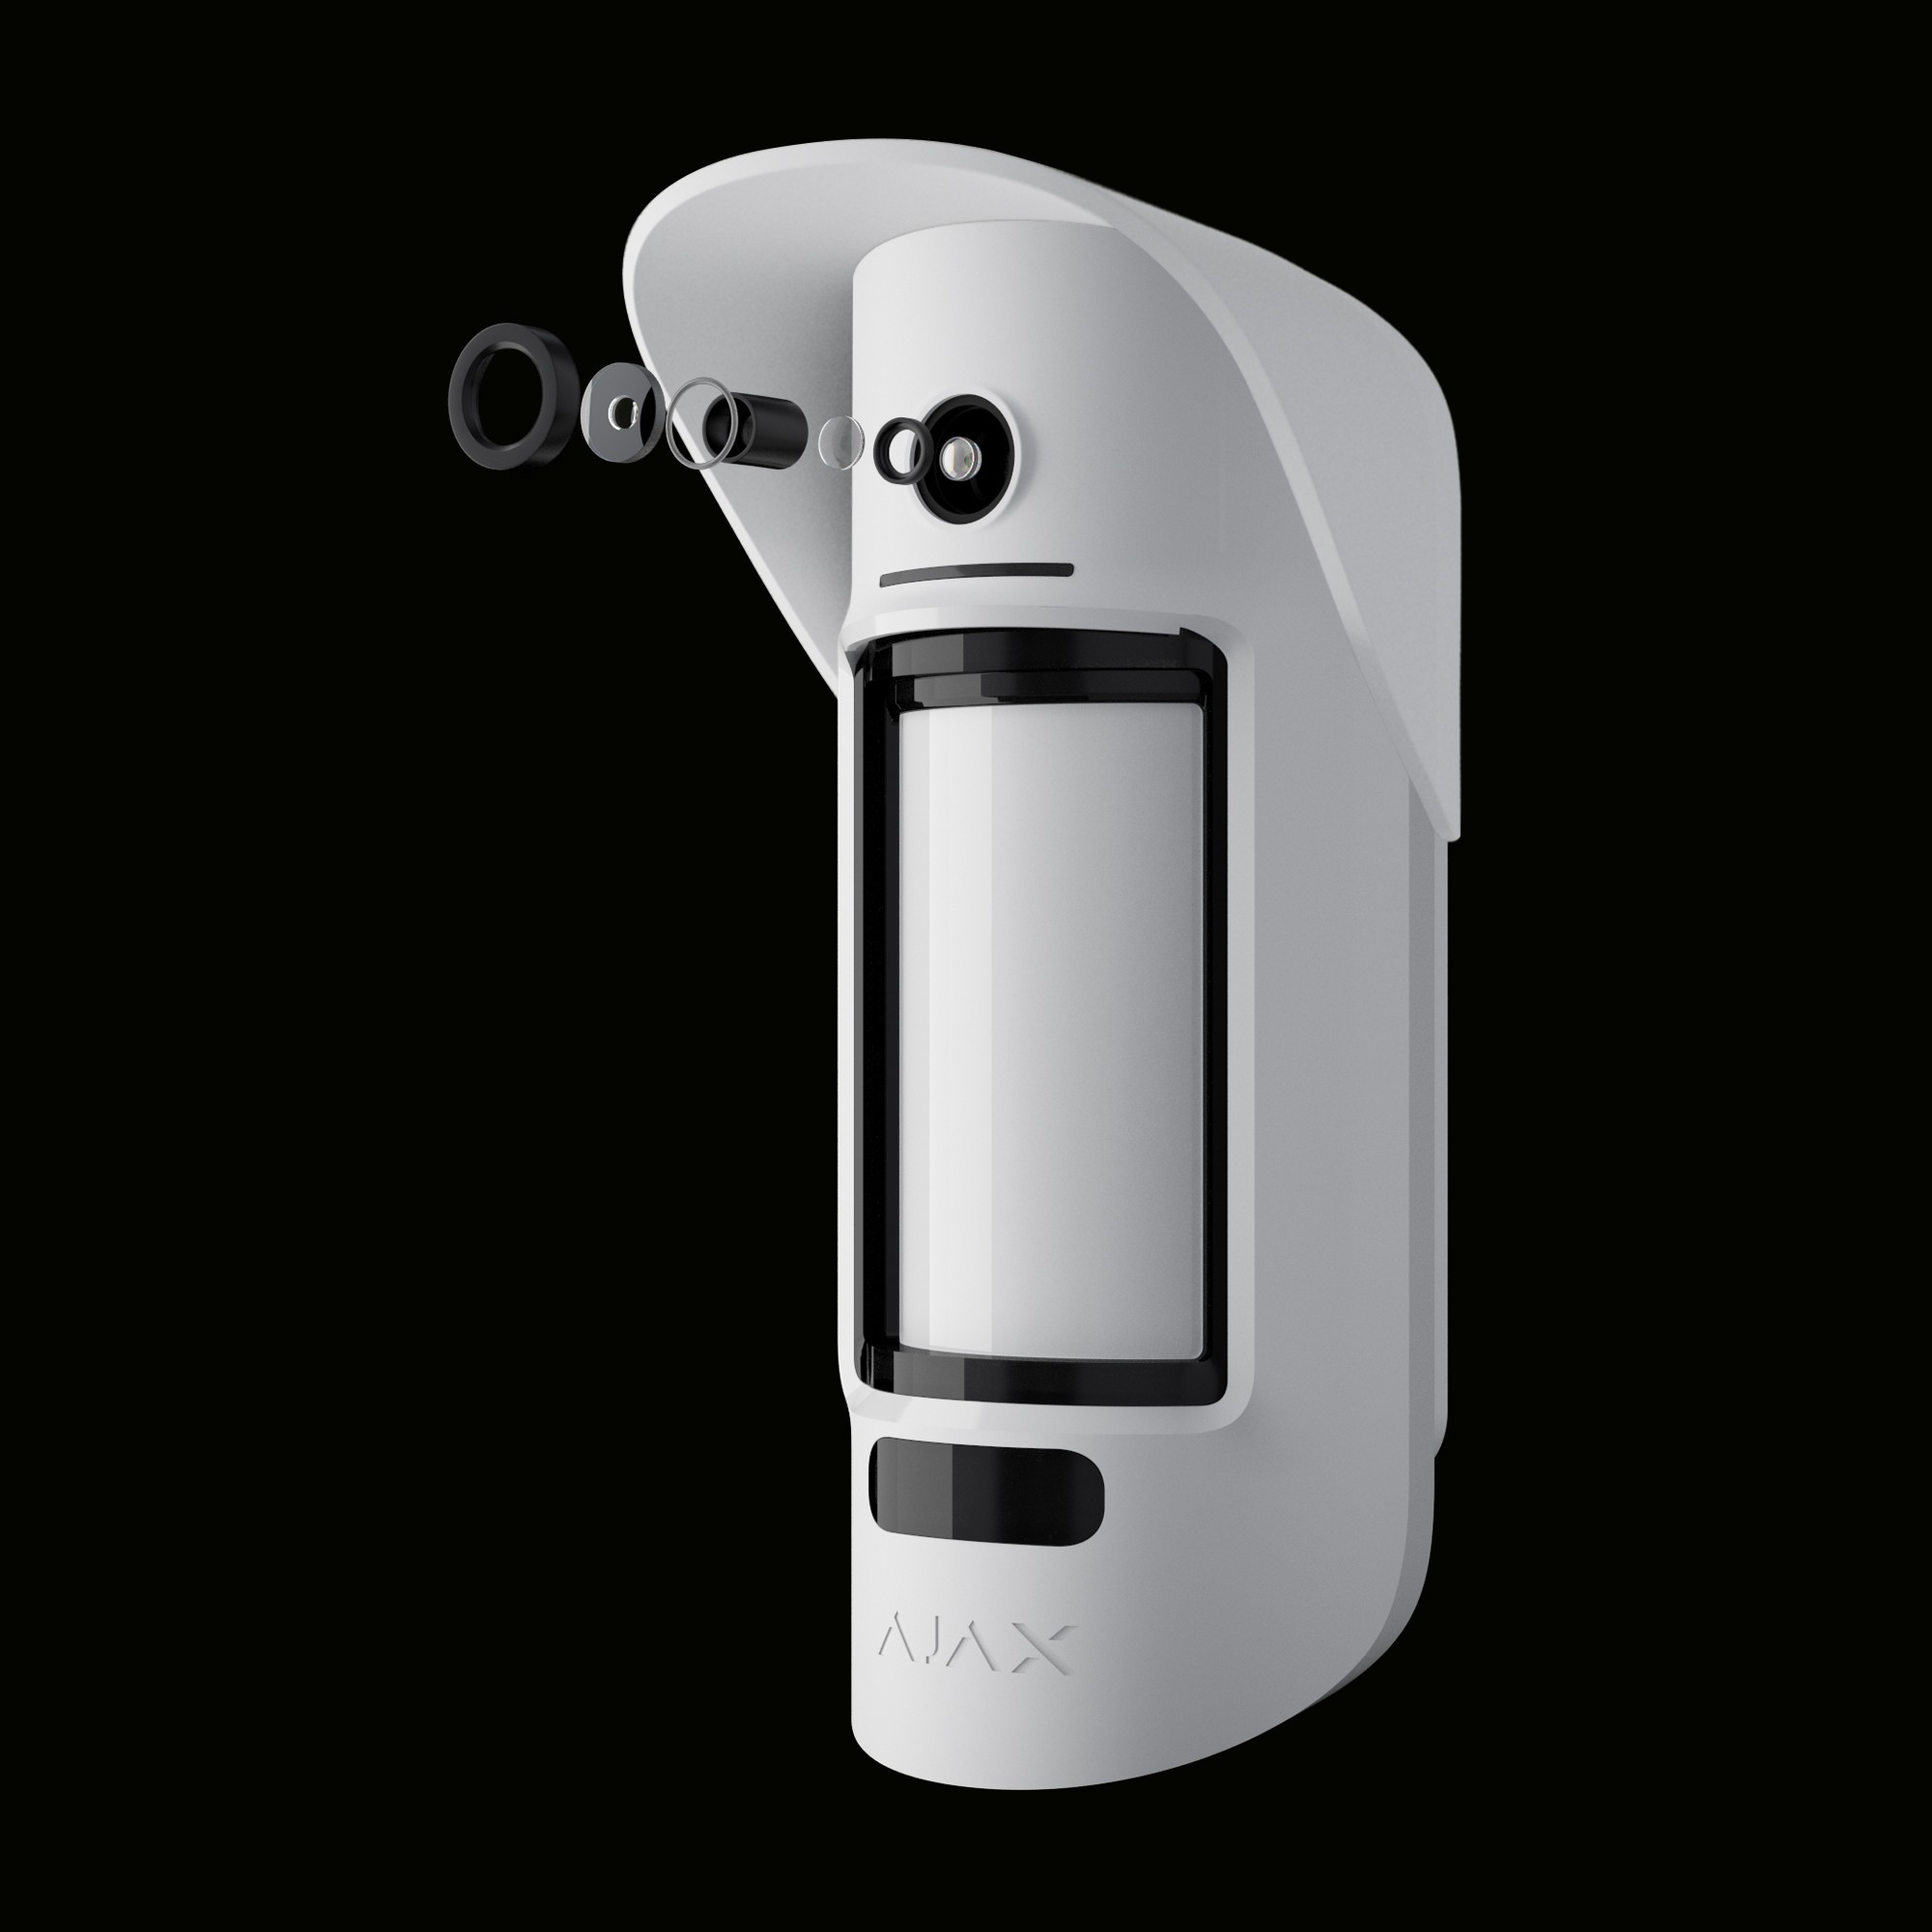 Détecteur de mouvement caméra extérieur sans fil - AJAX - Blanc